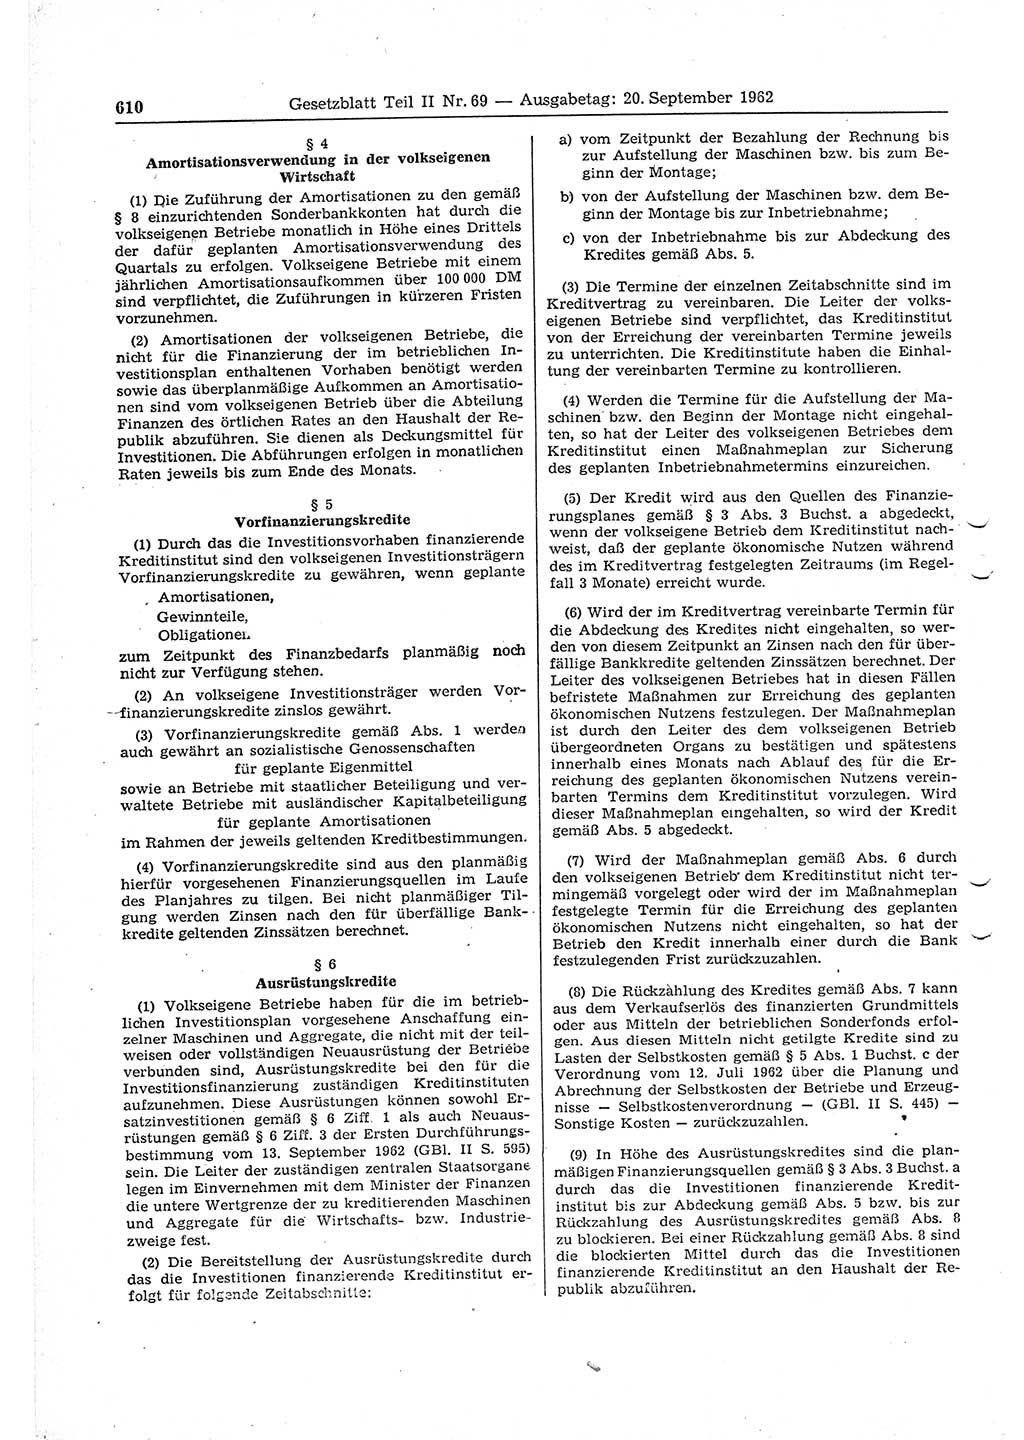 Gesetzblatt (GBl.) der Deutschen Demokratischen Republik (DDR) Teil ⅠⅠ 1962, Seite 610 (GBl. DDR ⅠⅠ 1962, S. 610)